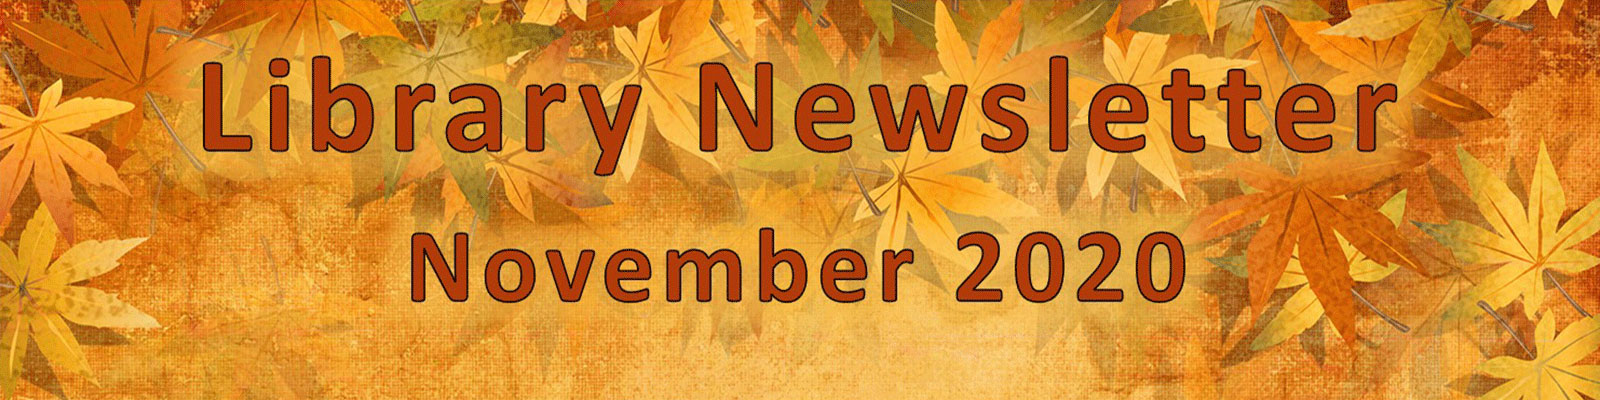 library Newsletter November 2020 Leaves Background